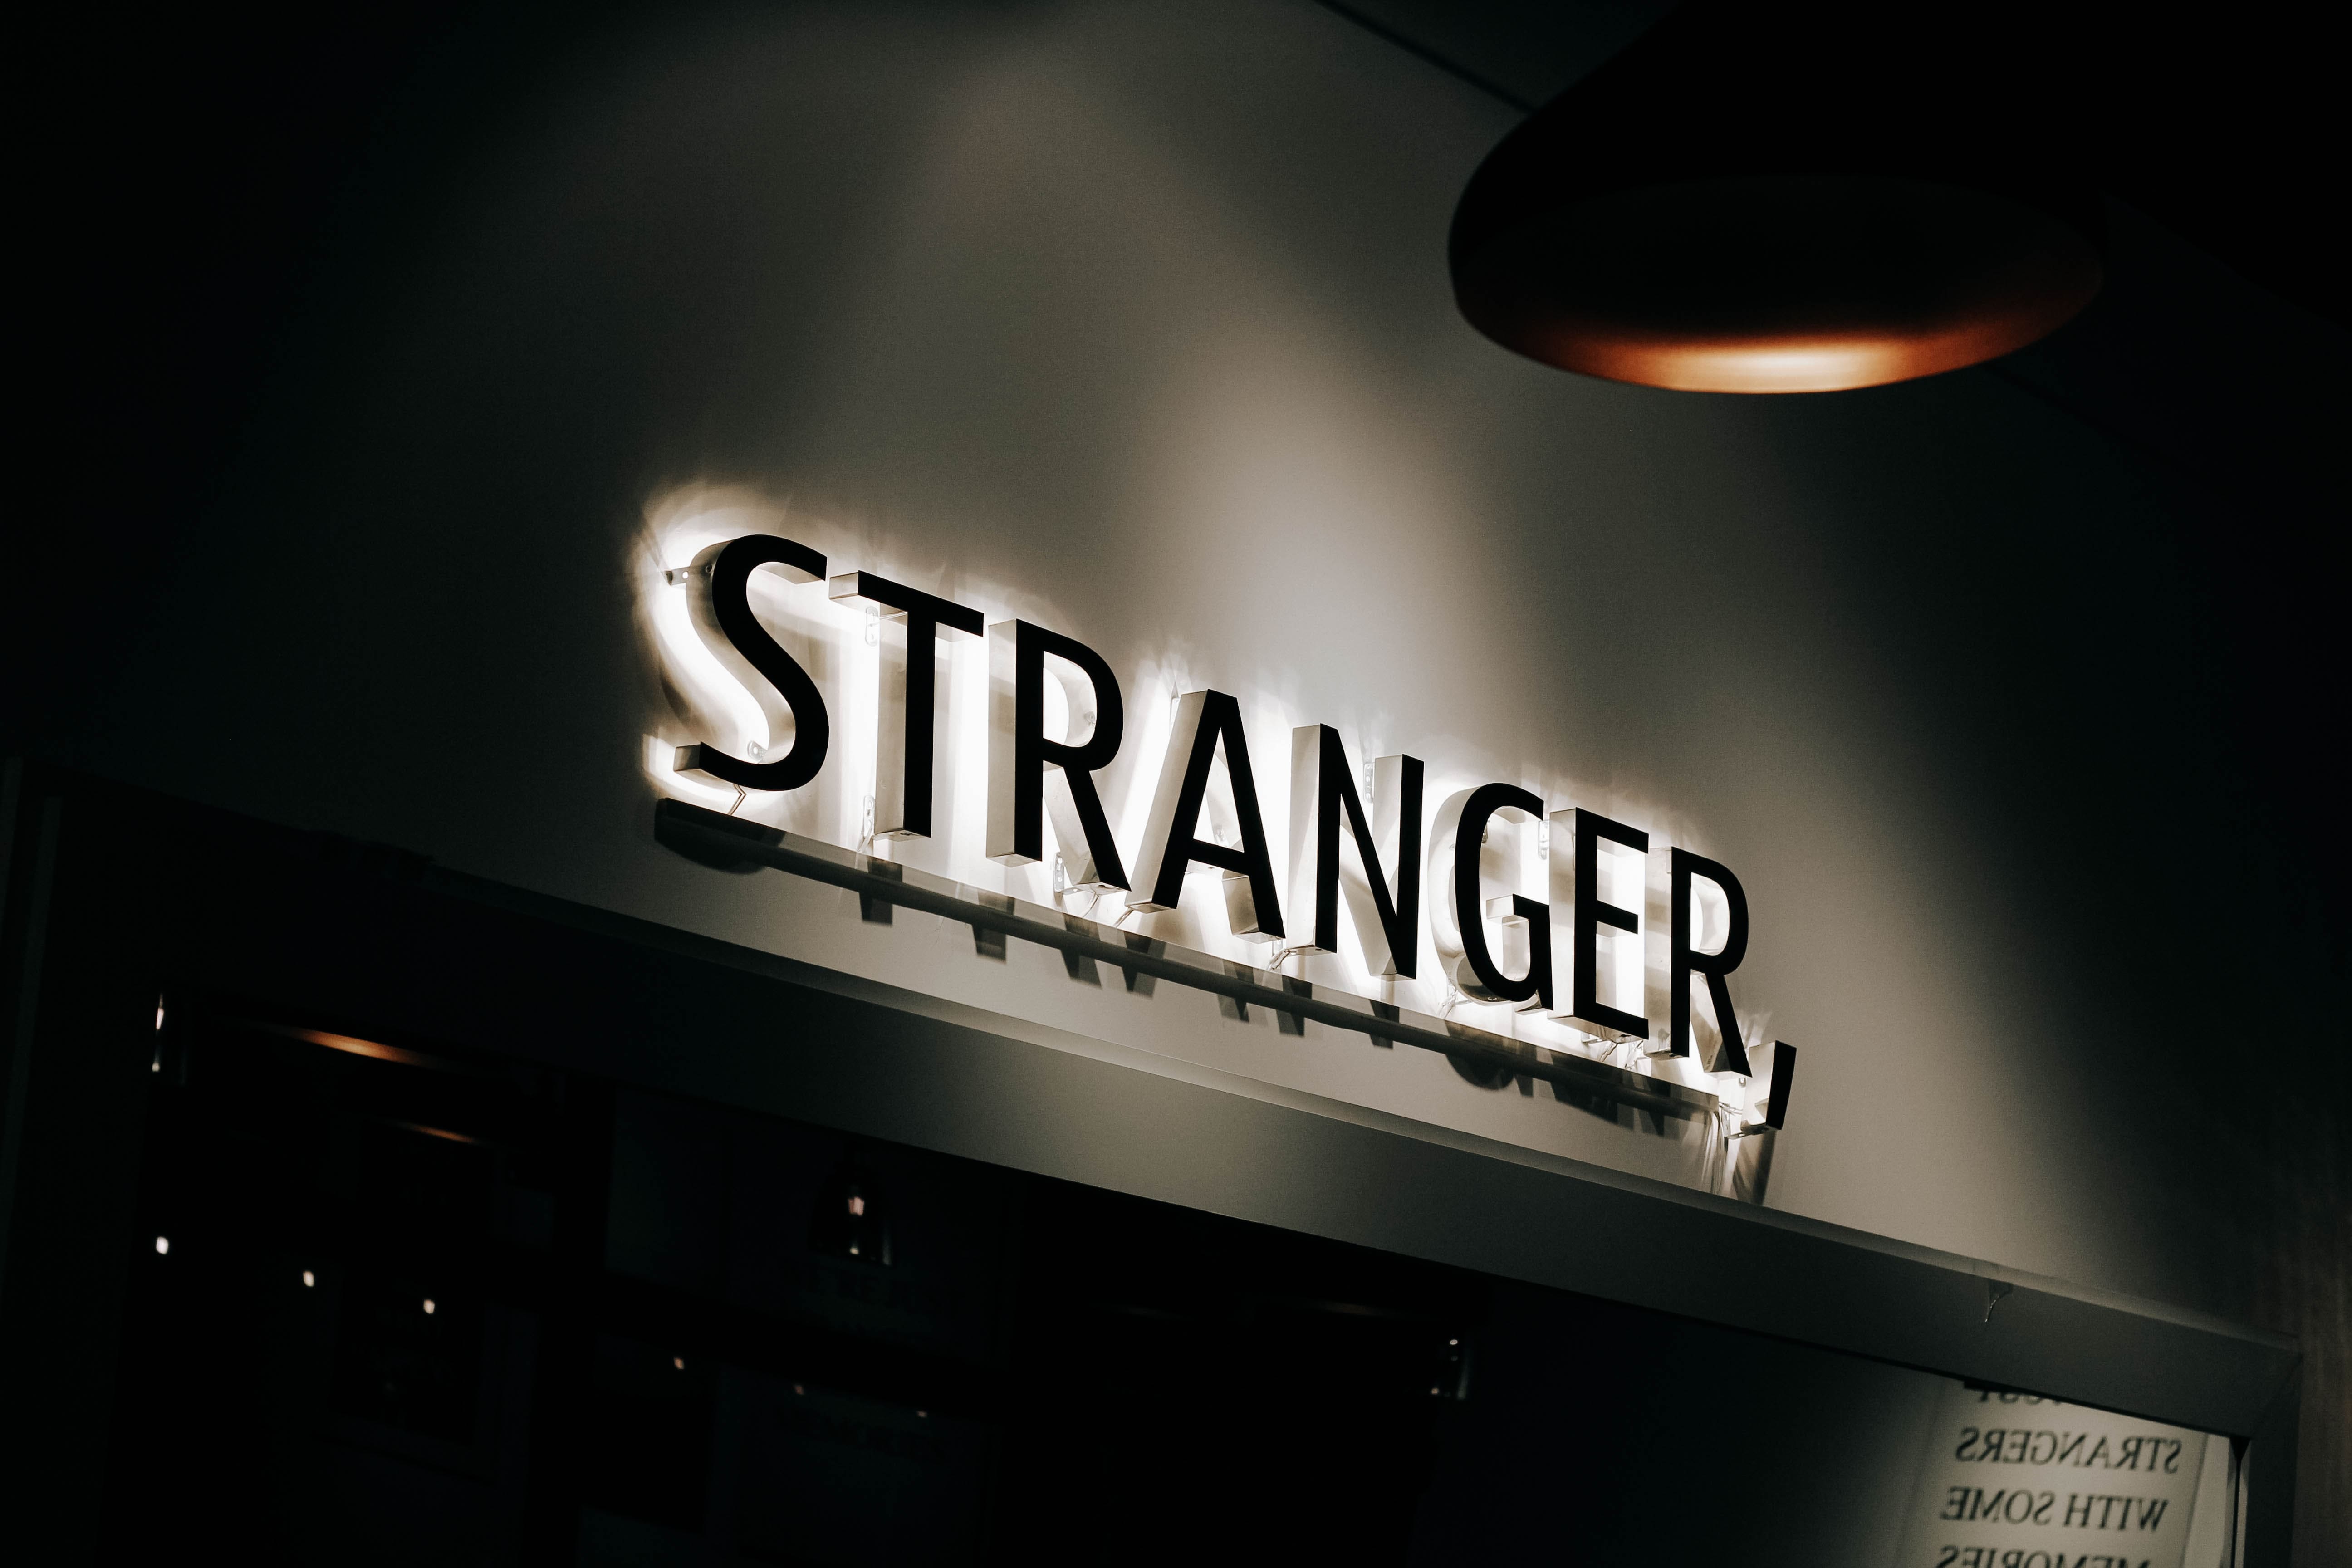 Lit up sign in a dark room reading "STRANGER"